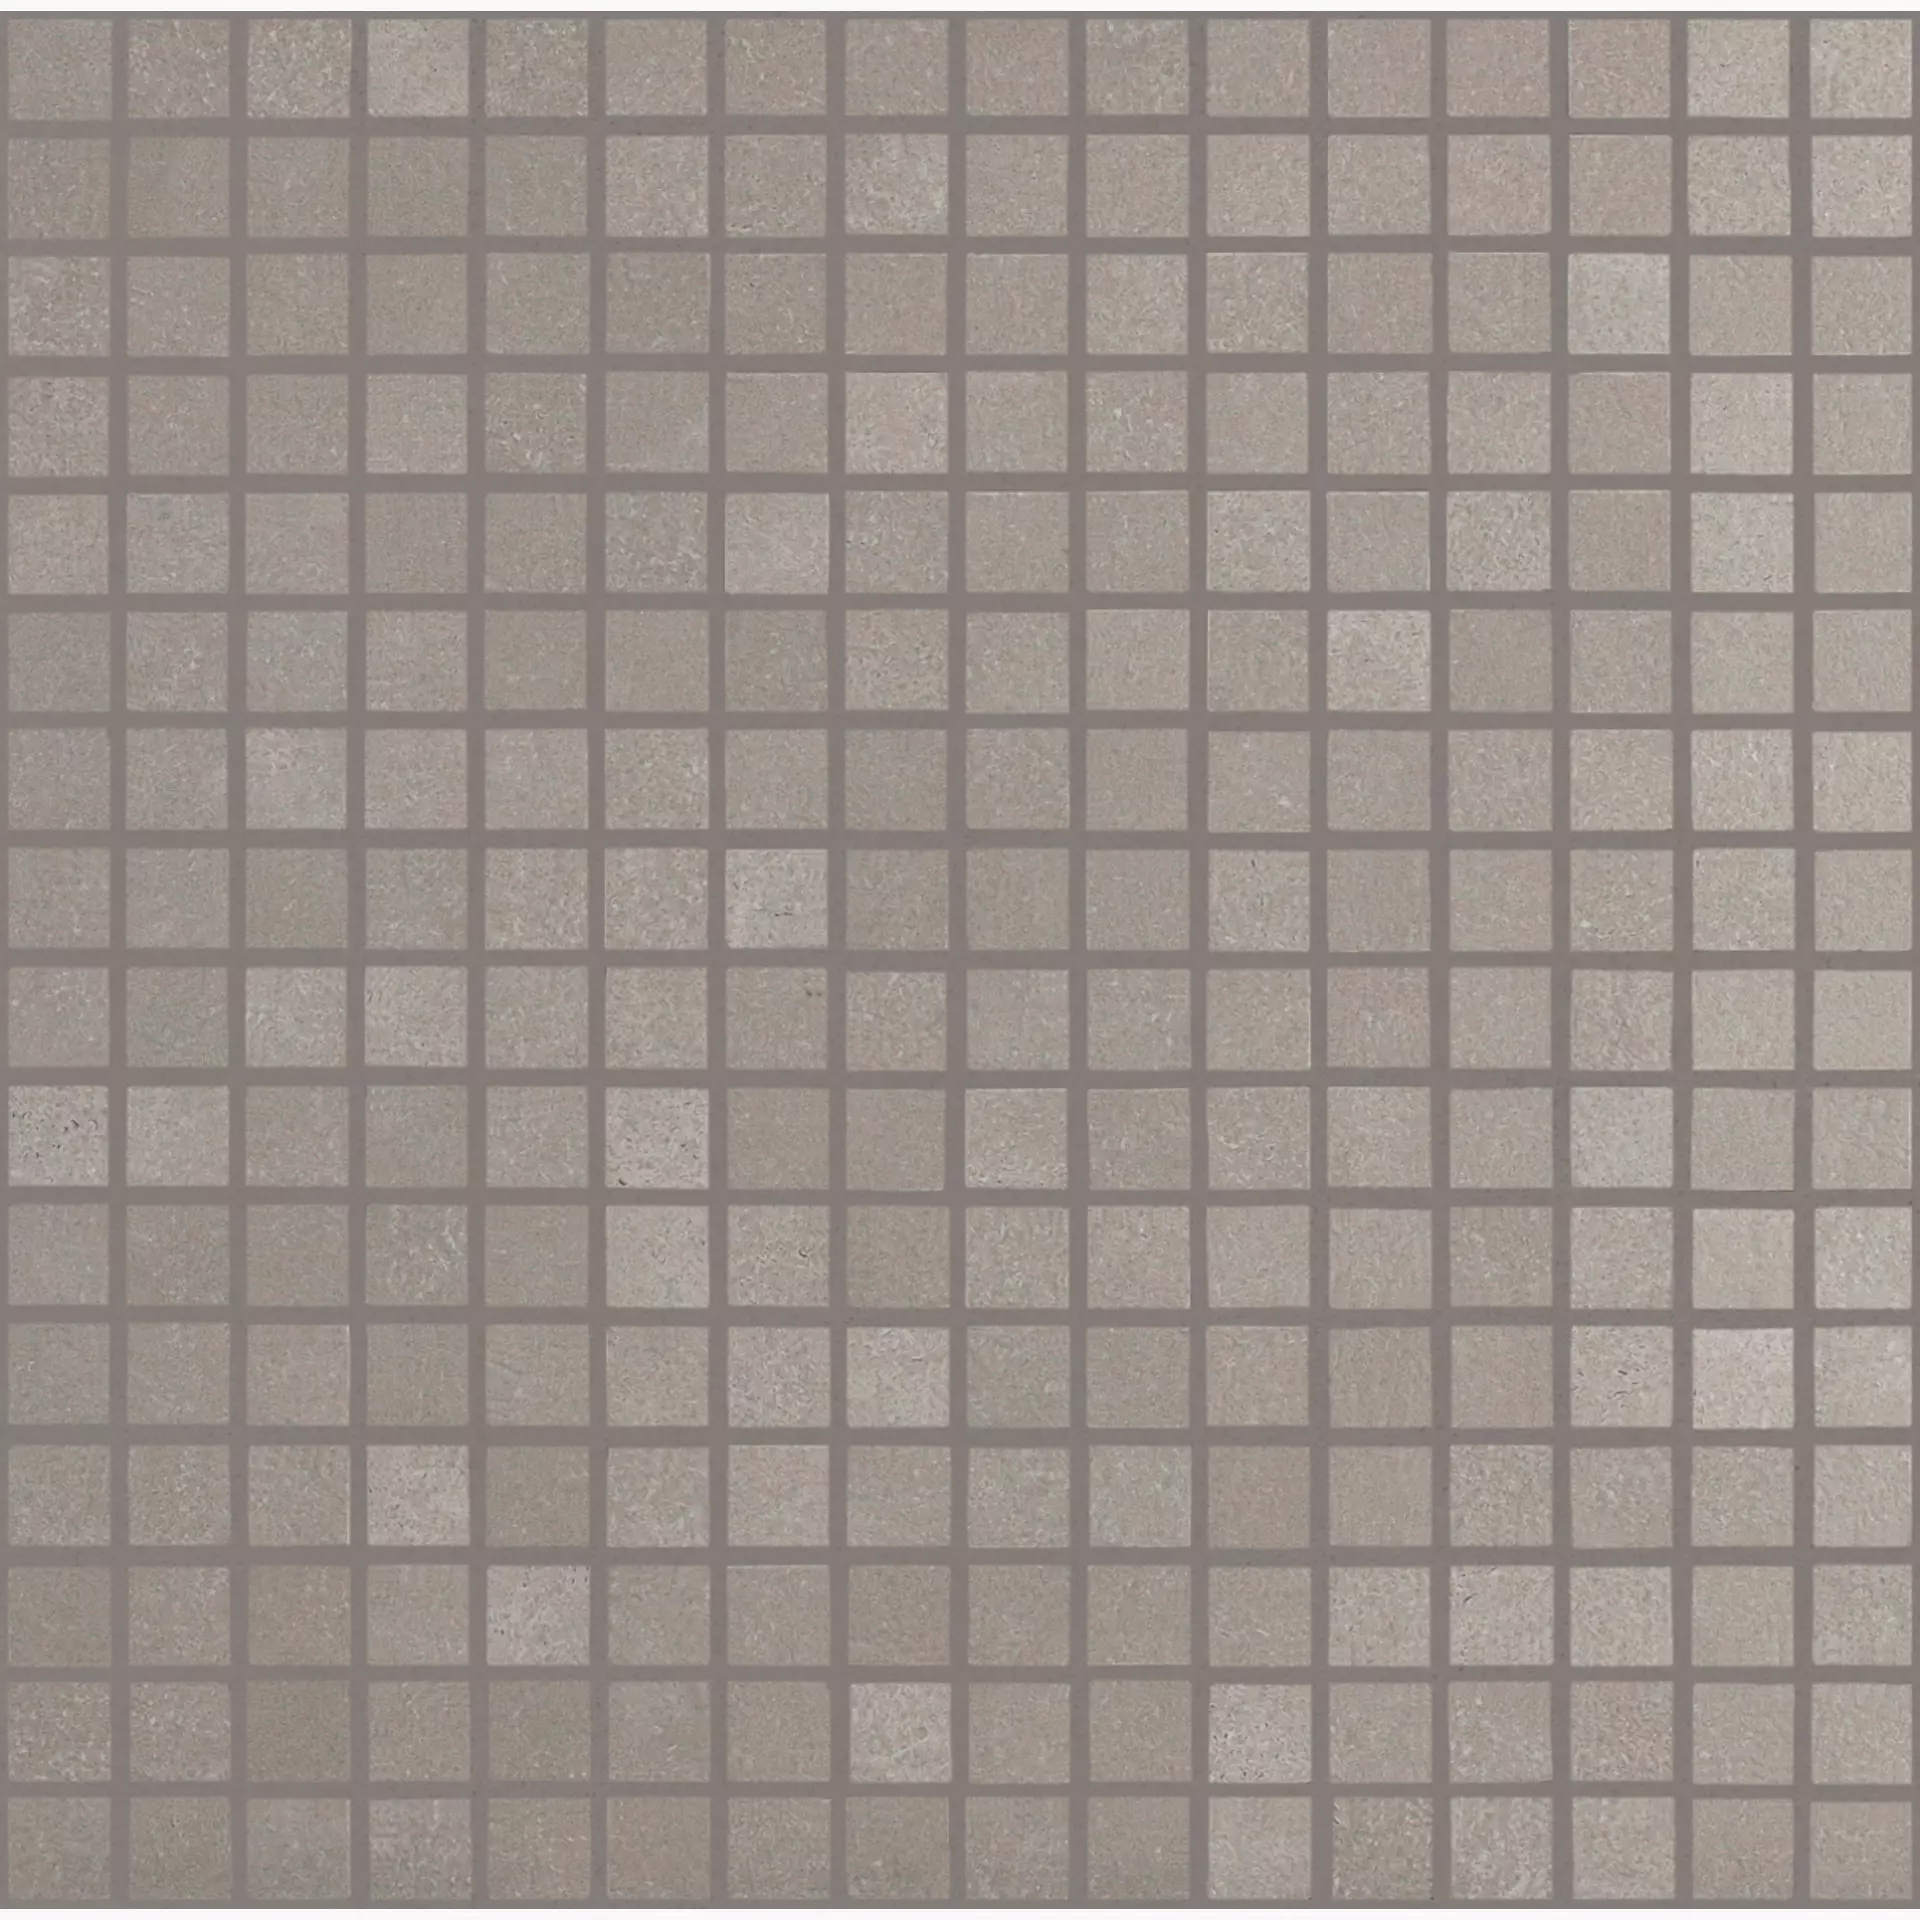 Bodenfliese,Wandfliese Marazzi Material Light Grey Naturale – Matt Light Grey M0LU matt natur 30x30cm Mosaik 10mm